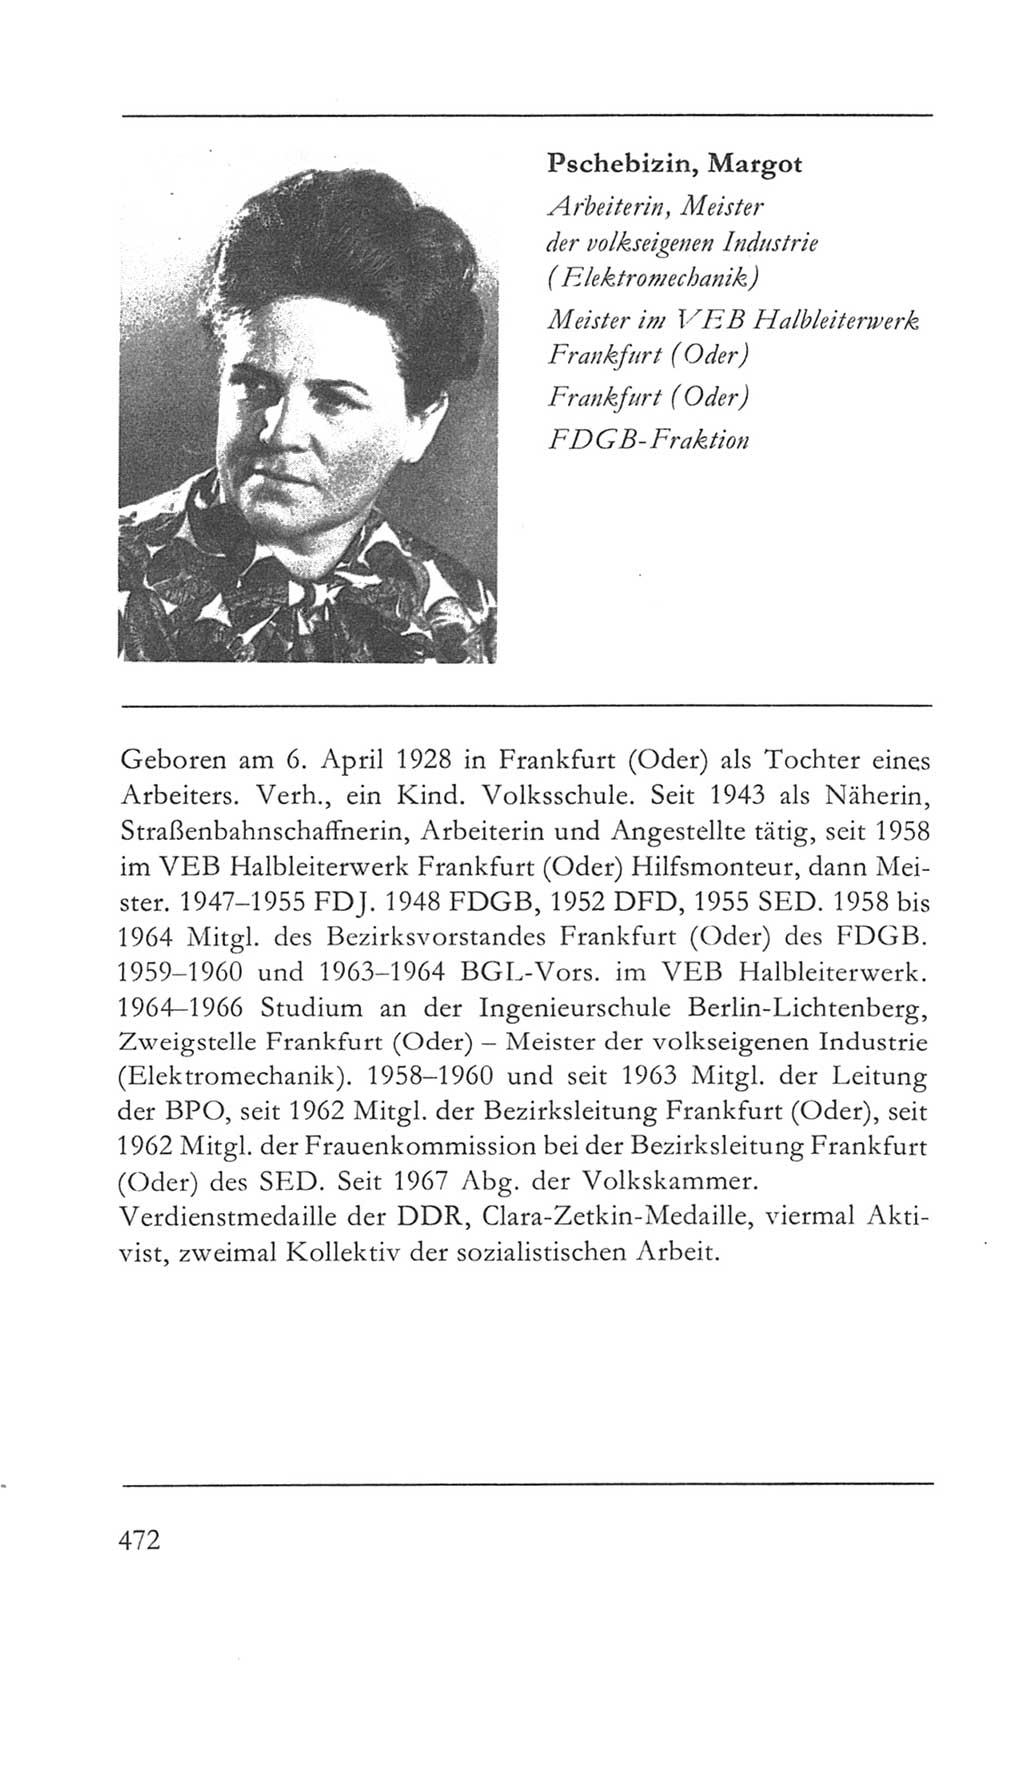 Volkskammer (VK) der Deutschen Demokratischen Republik (DDR) 5. Wahlperiode 1967-1971, Seite 472 (VK. DDR 5. WP. 1967-1971, S. 472)